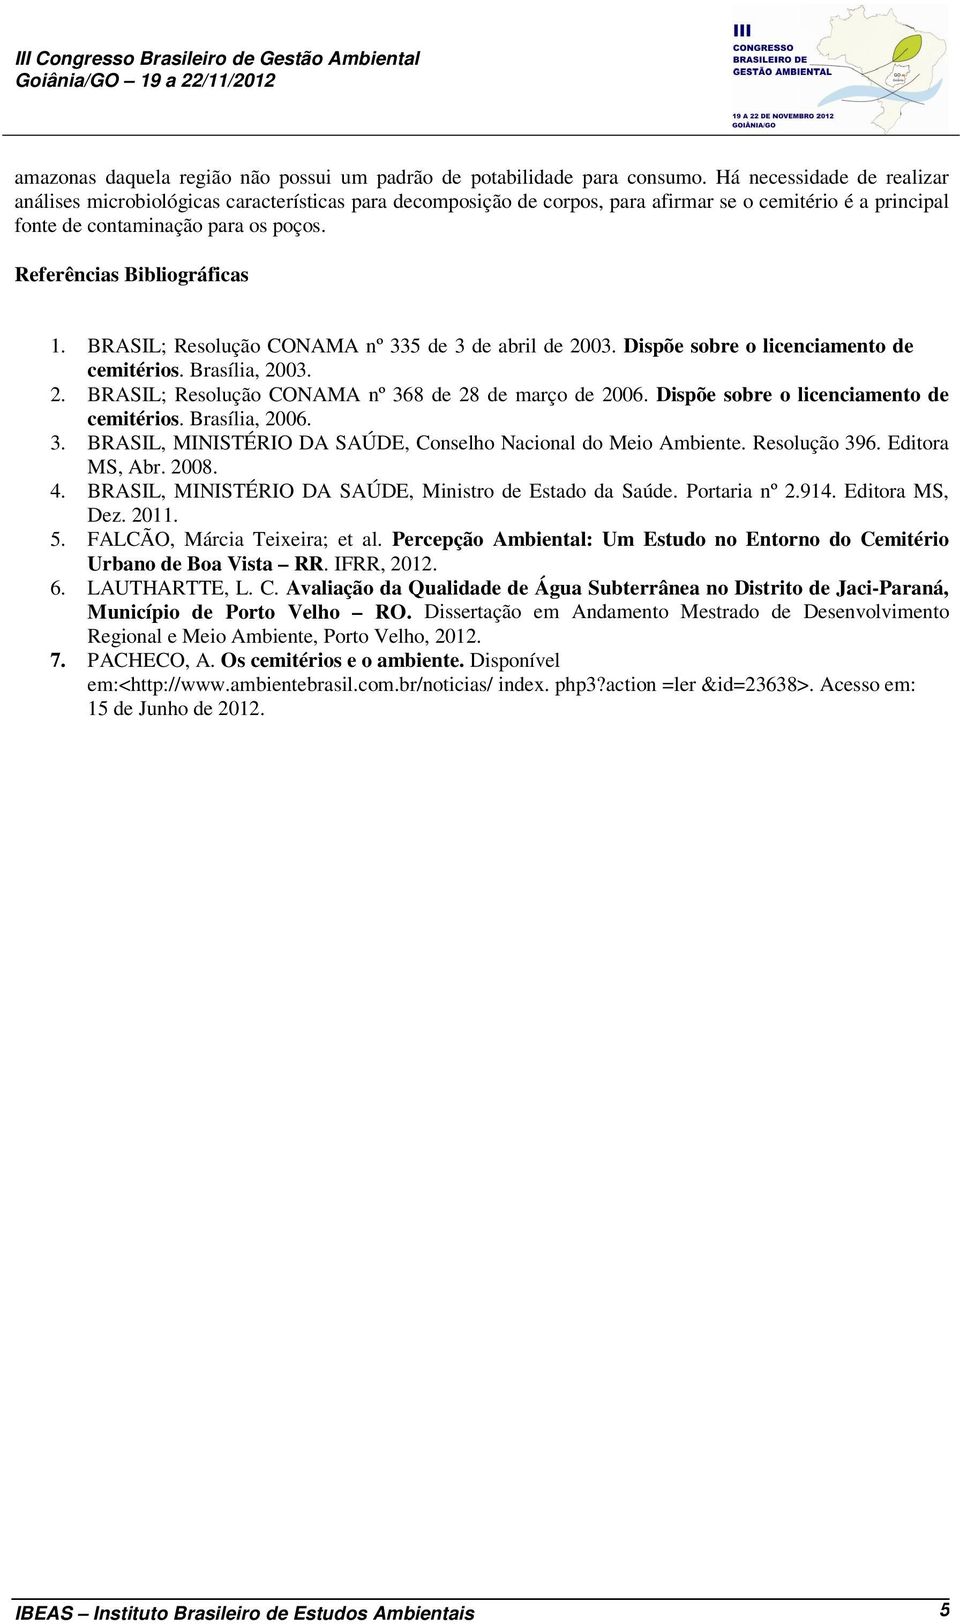 Referências Bibliográficas 1. BRASIL; Resolução CONAMA nº 335 de 3 de abril de 2003. Dispõe sobre o licenciamento de cemitérios. Brasília, 2003. 2. BRASIL; Resolução CONAMA nº 368 de 28 de março de 2006.